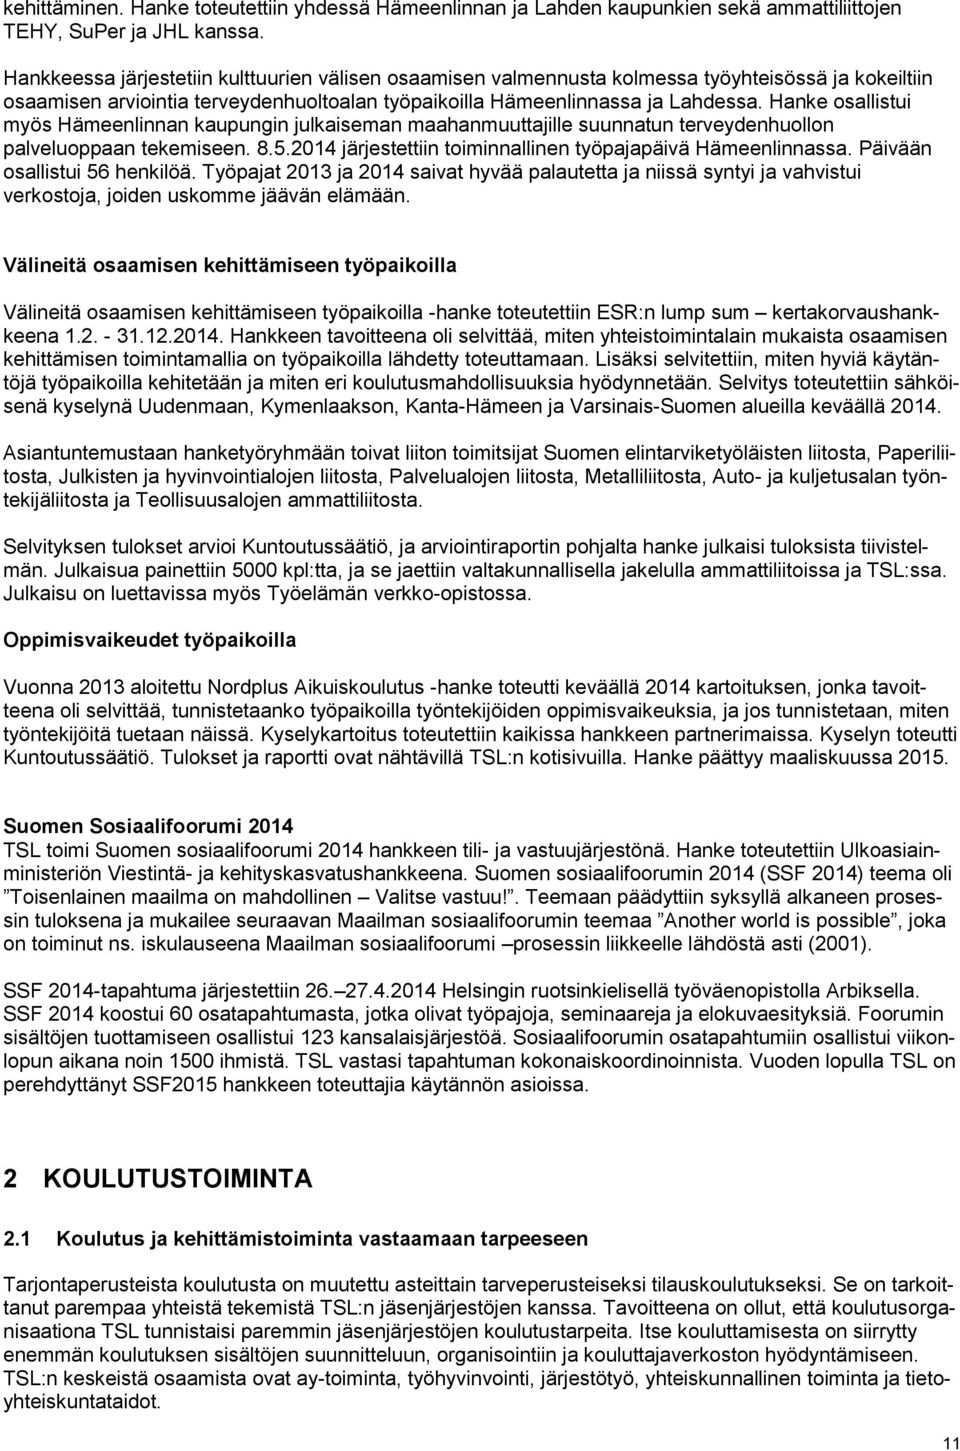 Hanke osallistui myös Hämeenlinnan kaupungin julkaiseman maahanmuuttajille suunnatun terveydenhuollon palveluoppaan tekemiseen. 8.5.2014 järjestettiin toiminnallinen työpajapäivä Hämeenlinnassa.